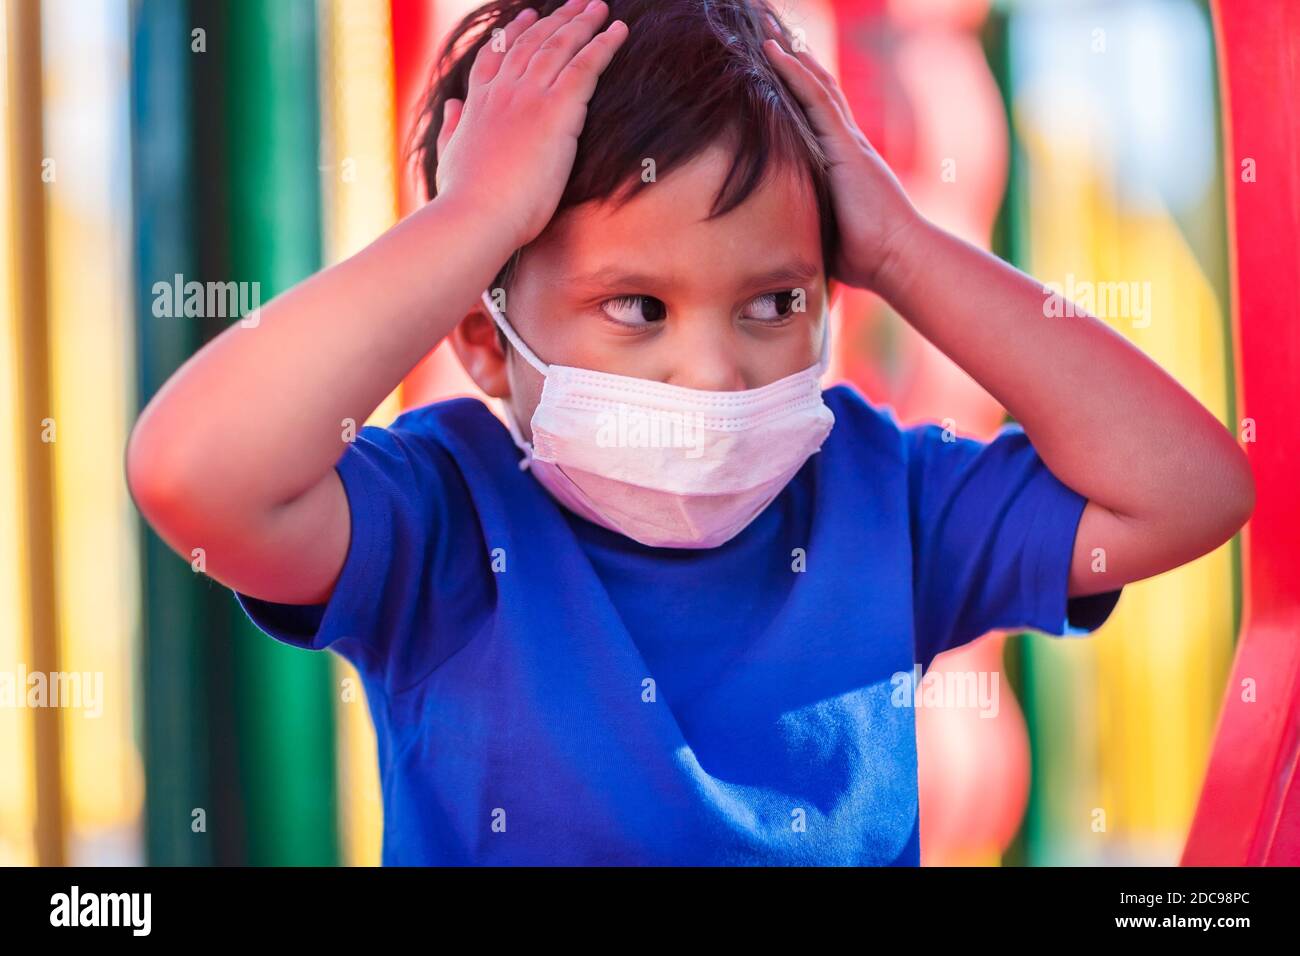 Niño latino usando una máscara durante las restricciones covid-19, mientras juega en un patio público. Foto de stock